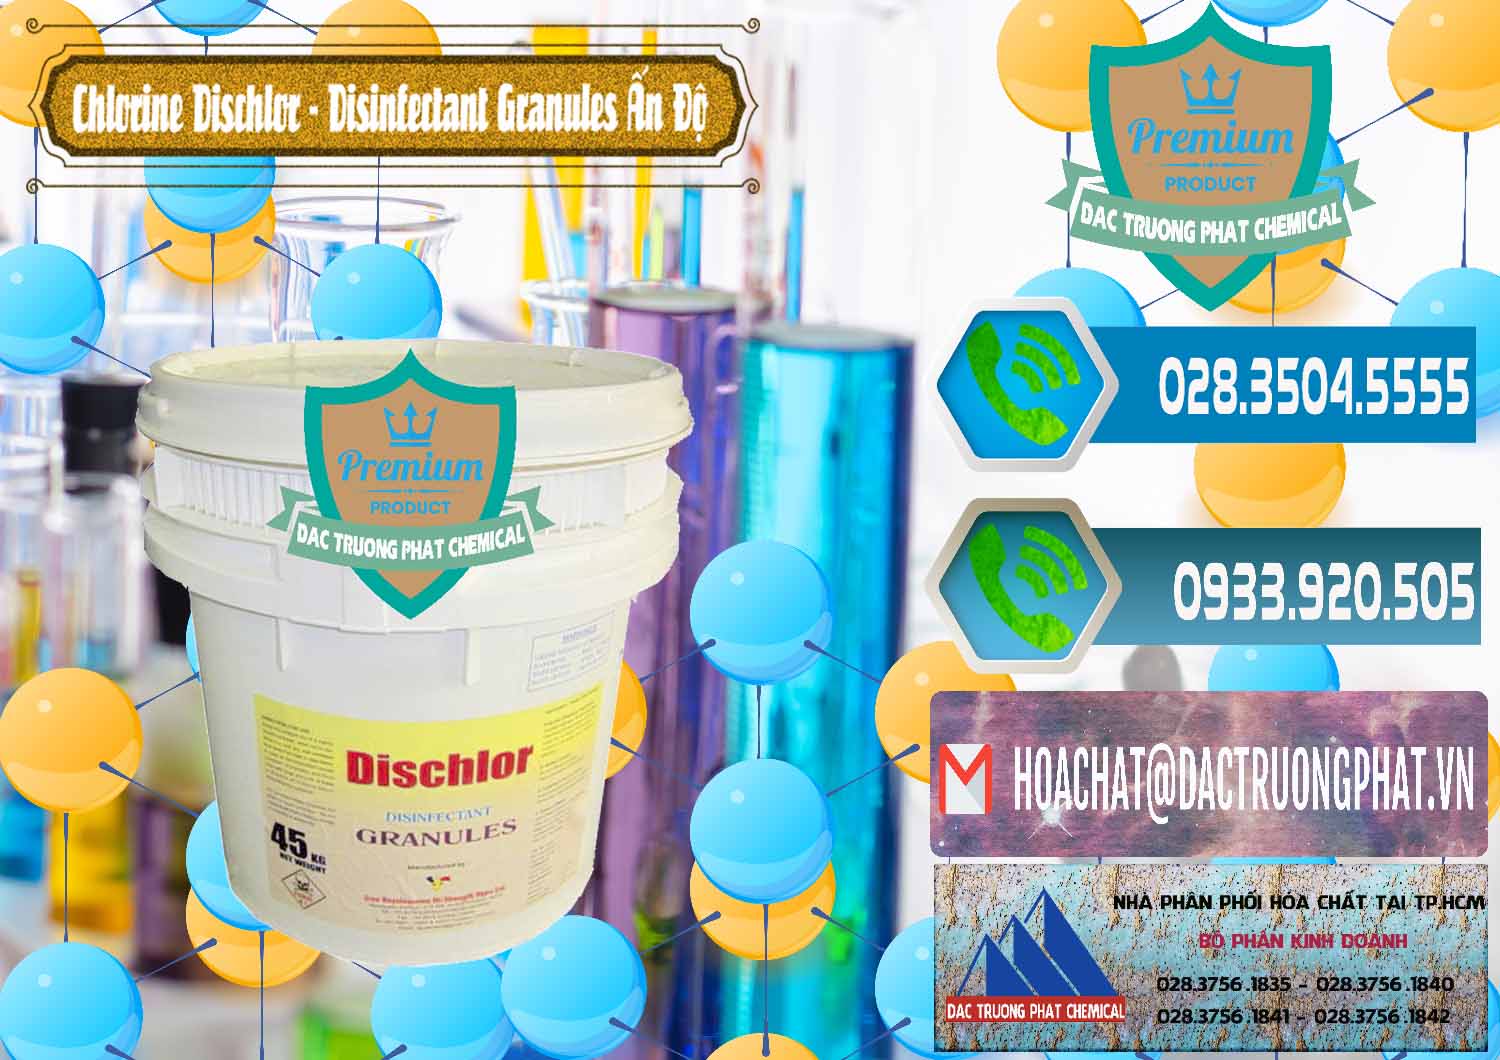 Cty chuyên cung cấp & bán Chlorine – Clorin 70% Dischlor - Disinfectant Granules Ấn Độ India - 0248 - Chuyên phân phối & bán hóa chất tại TP.HCM - congtyhoachat.net